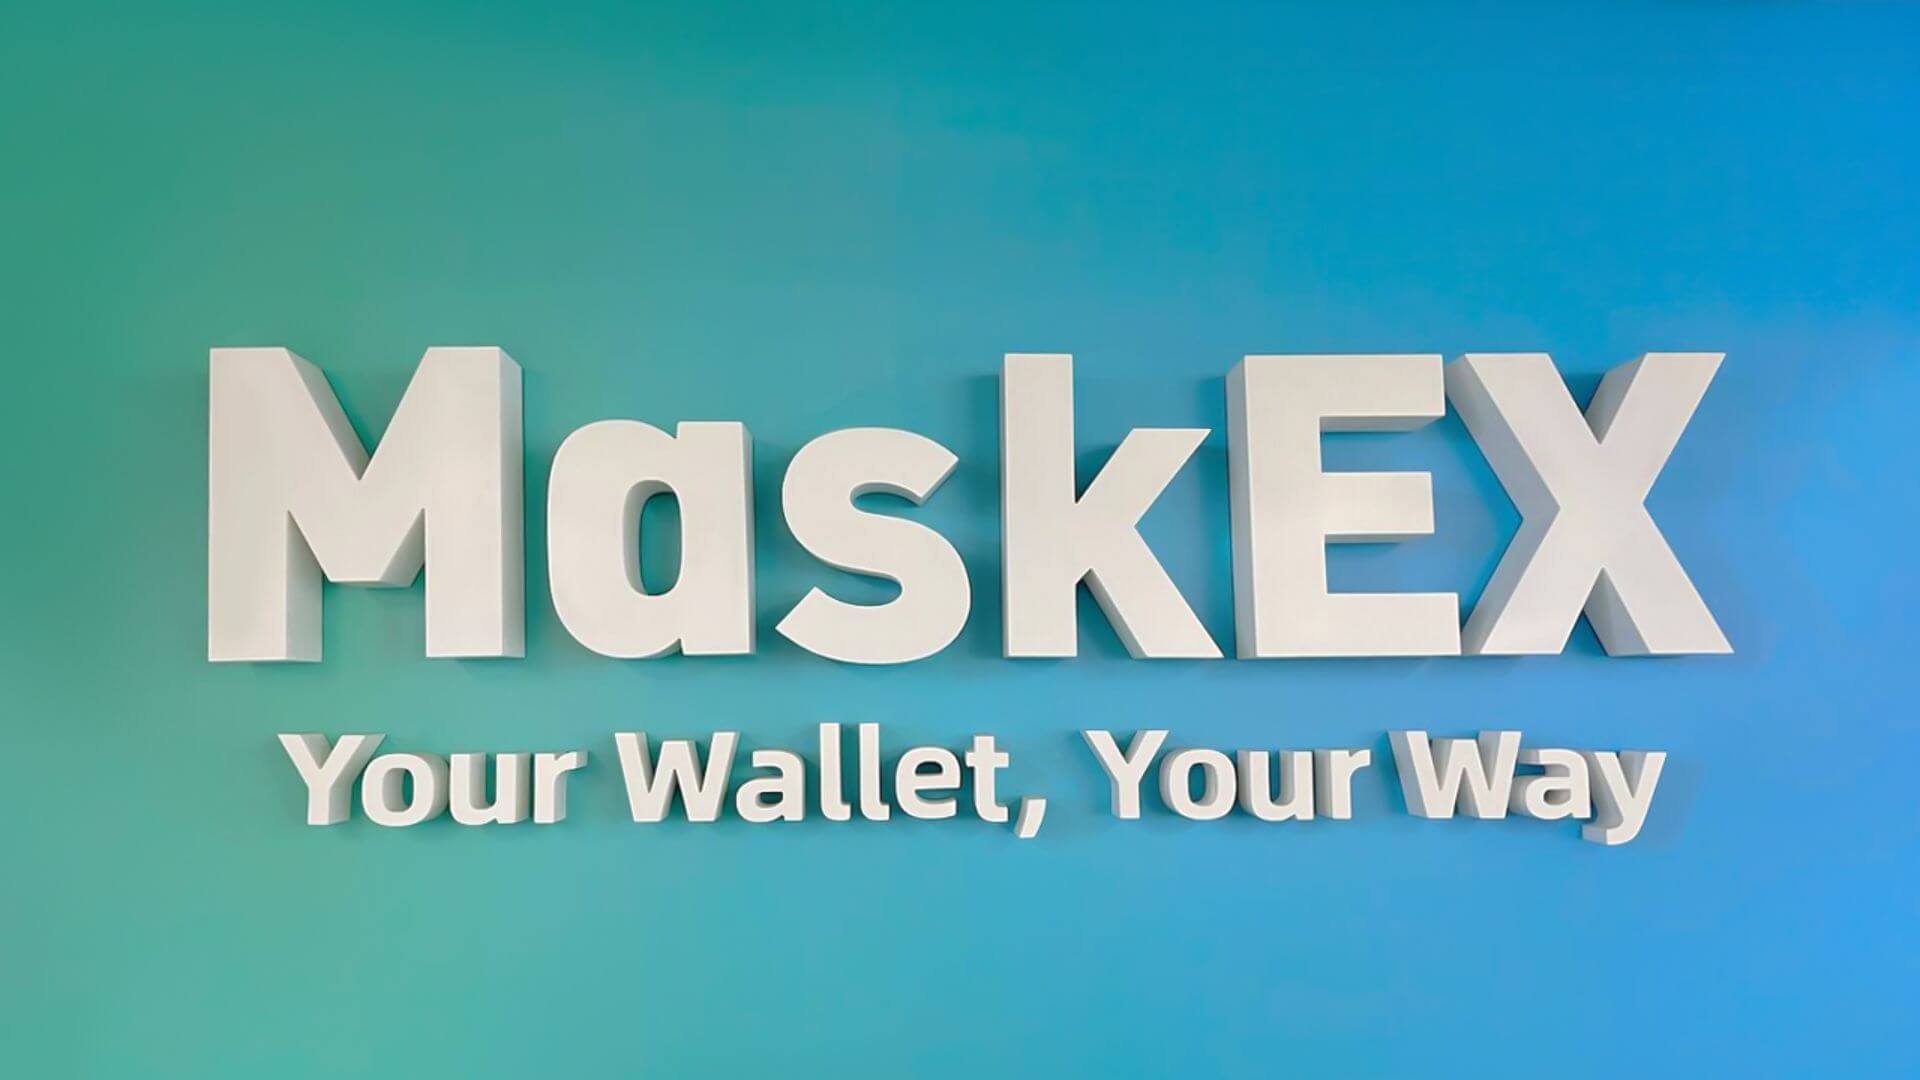 L'exchange di criptovalute MaskEX riceve l'approvazione iniziale da VARA per il lancio negli Emirati Arabi Uniti